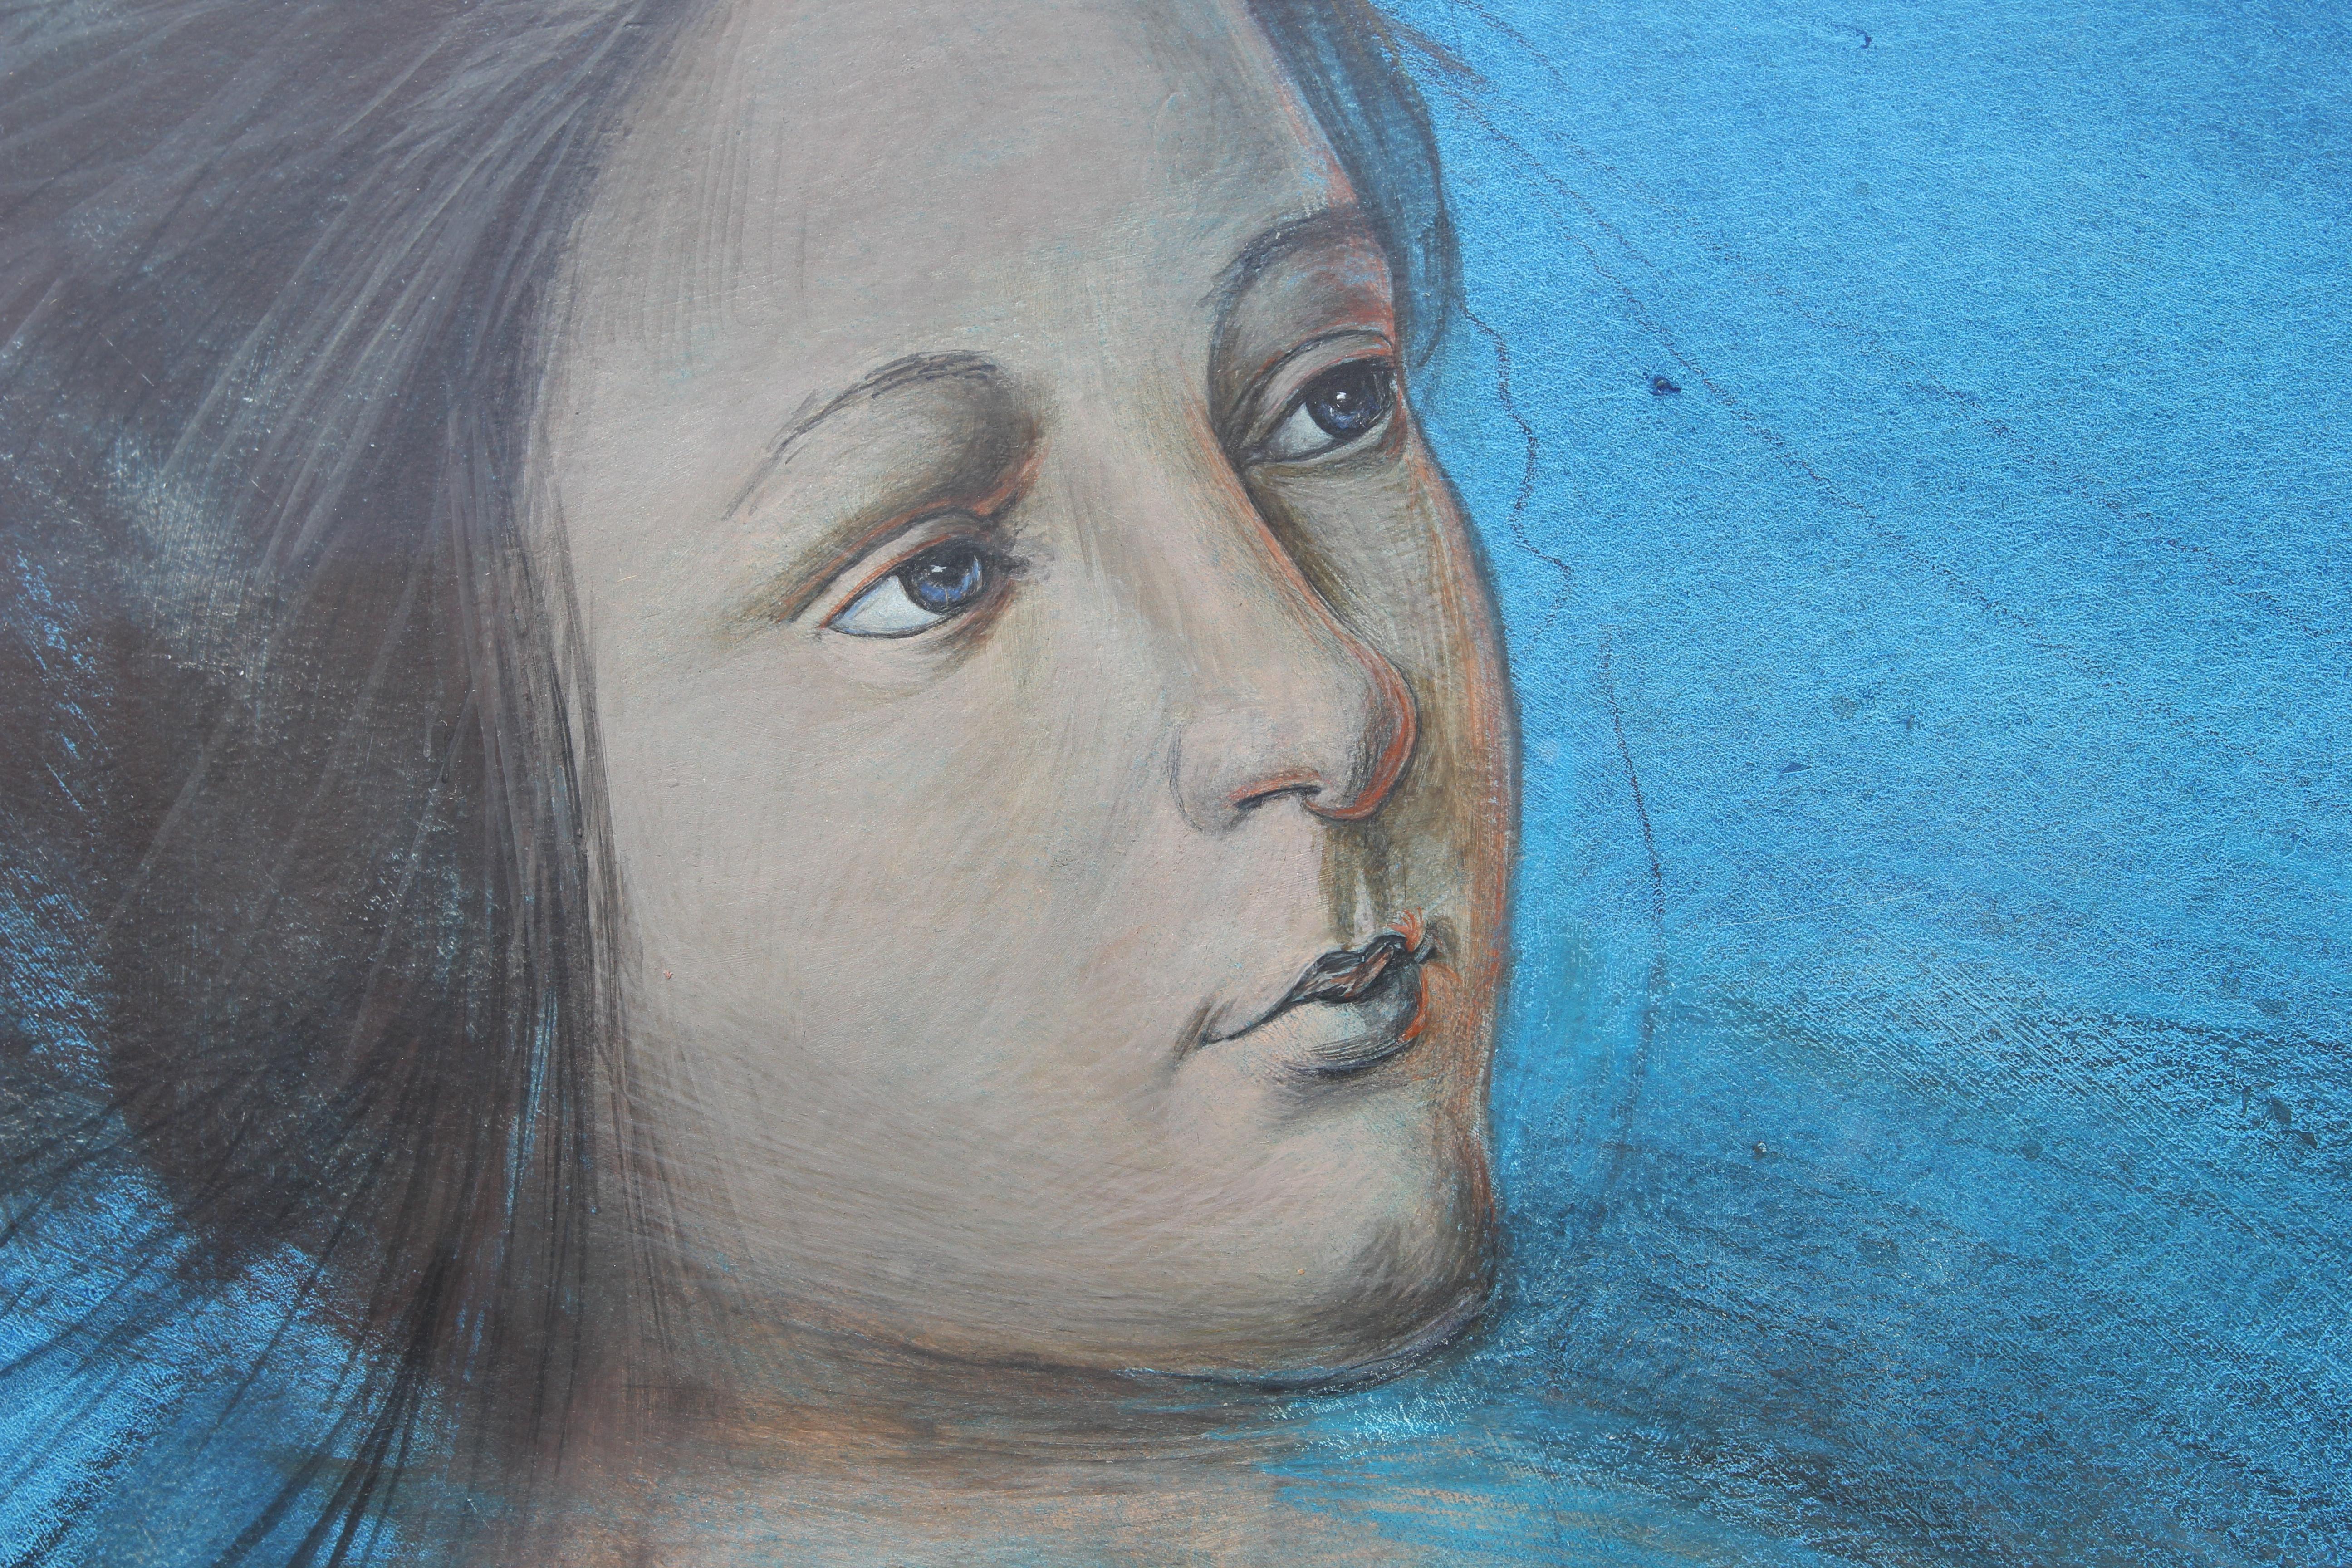 Großes abstraktes figuratives Porträt in Blautönen, das eine Frau mit einer um ihre Finger geschlungenen Schnur darstellt und als eines der ältesten Spiele der Menschheitsgeschichte gilt: Cat's Cradle (bei dem man verschiedene Schnurfiguren kreiert,